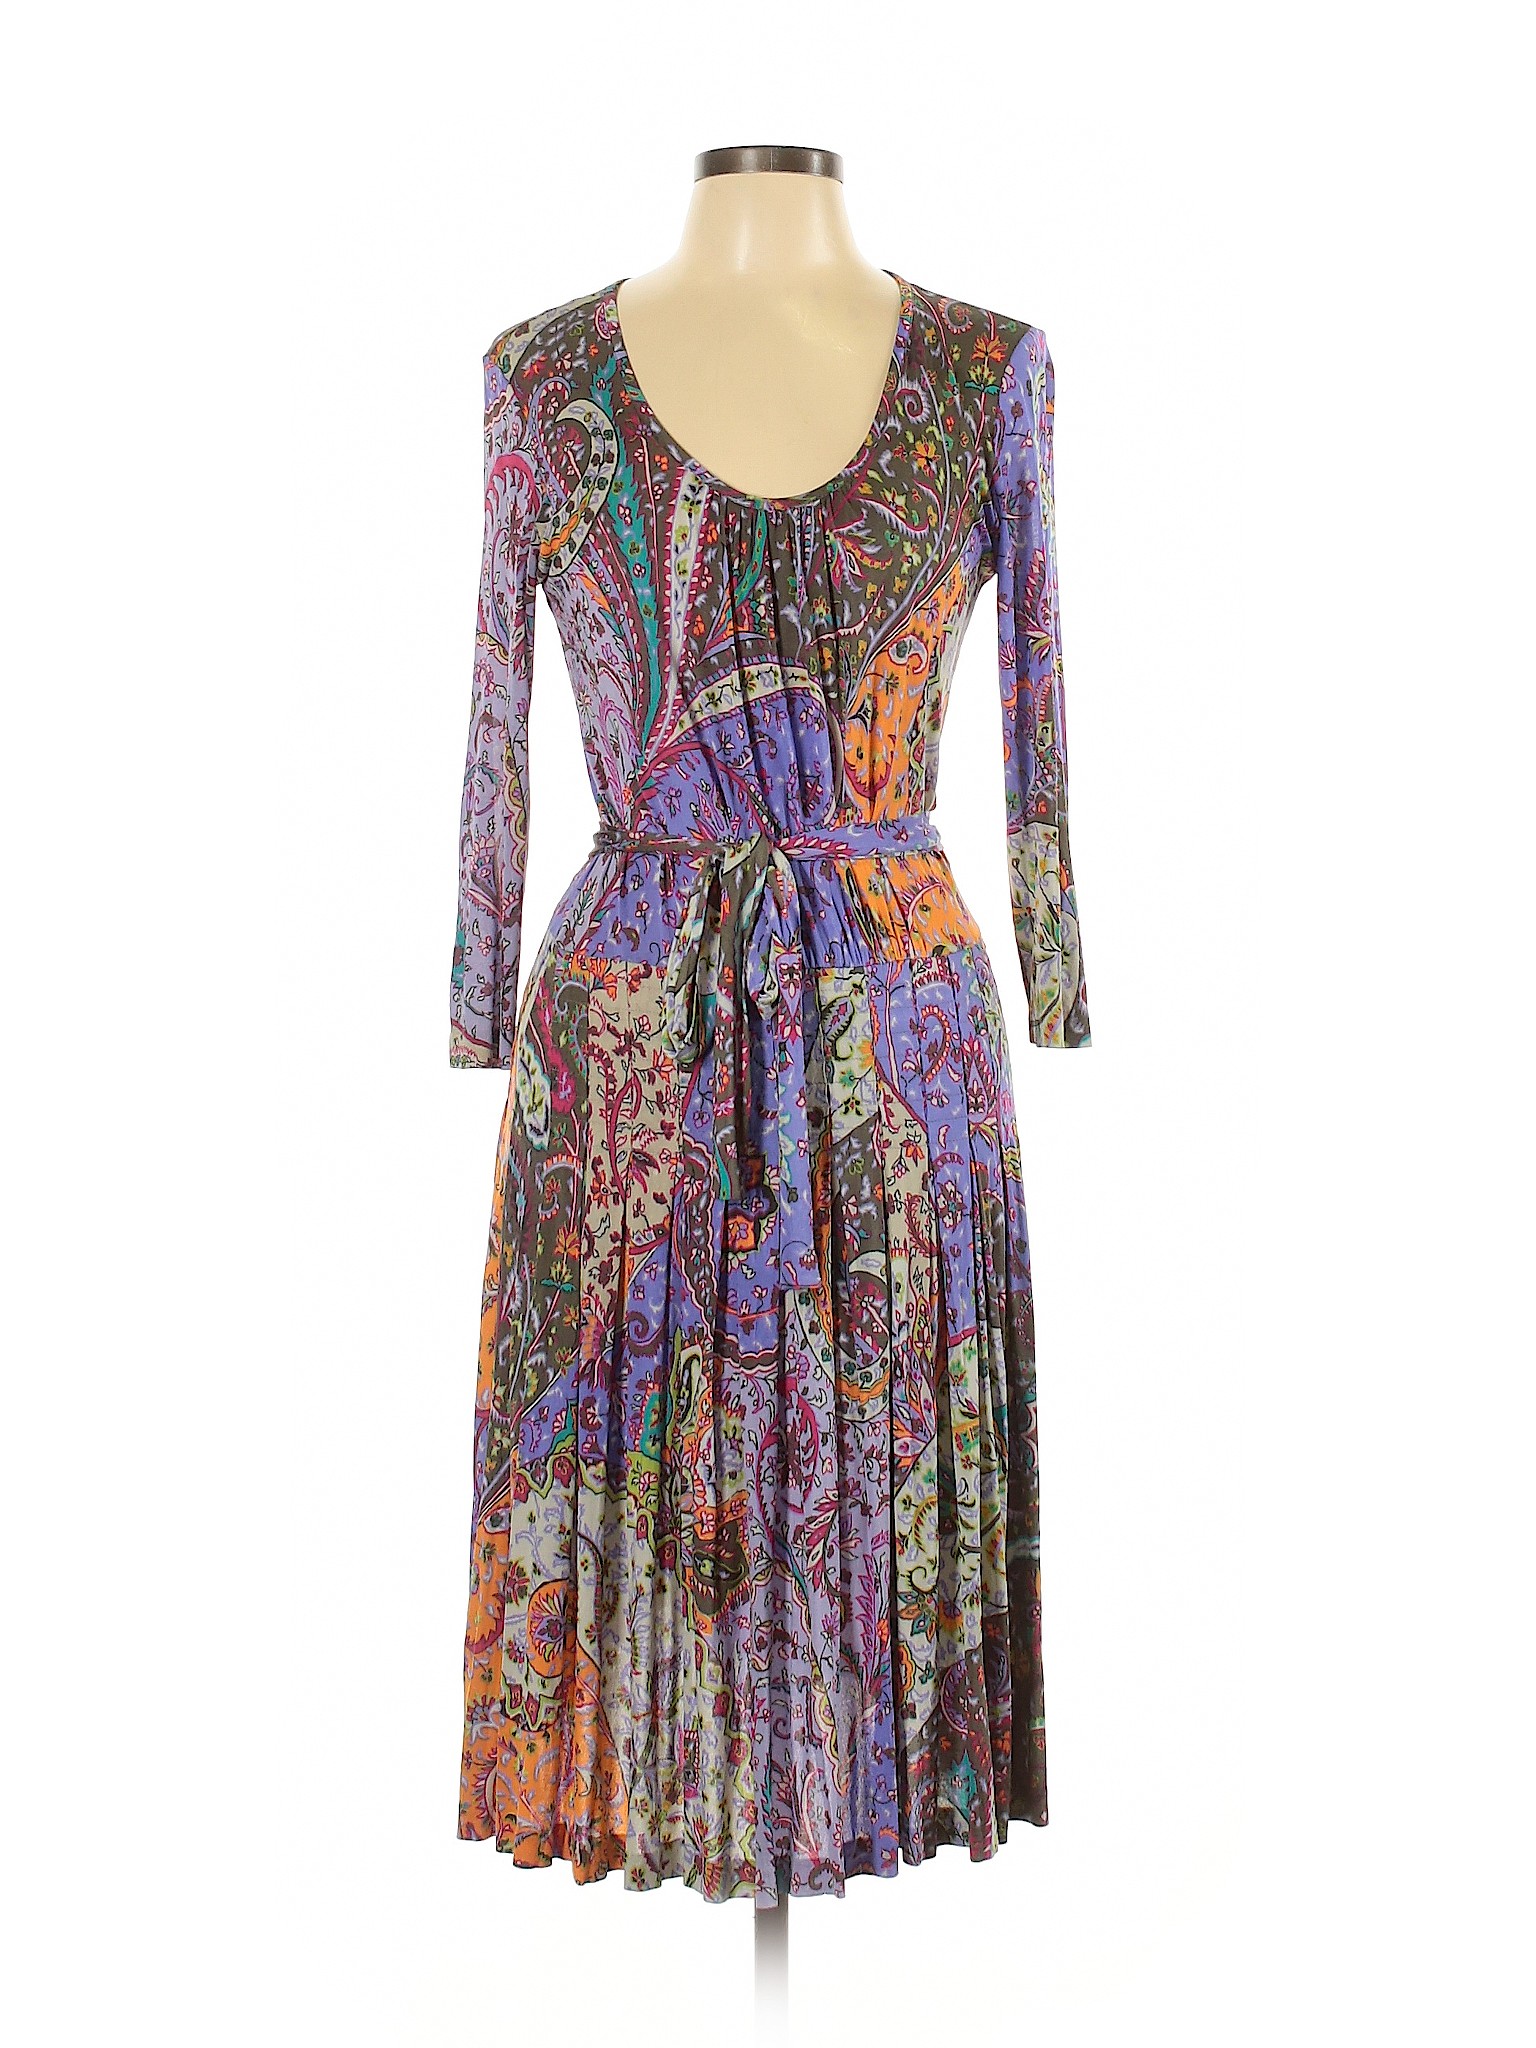 ETRO Women Purple Casual Dress 44 italian | eBay